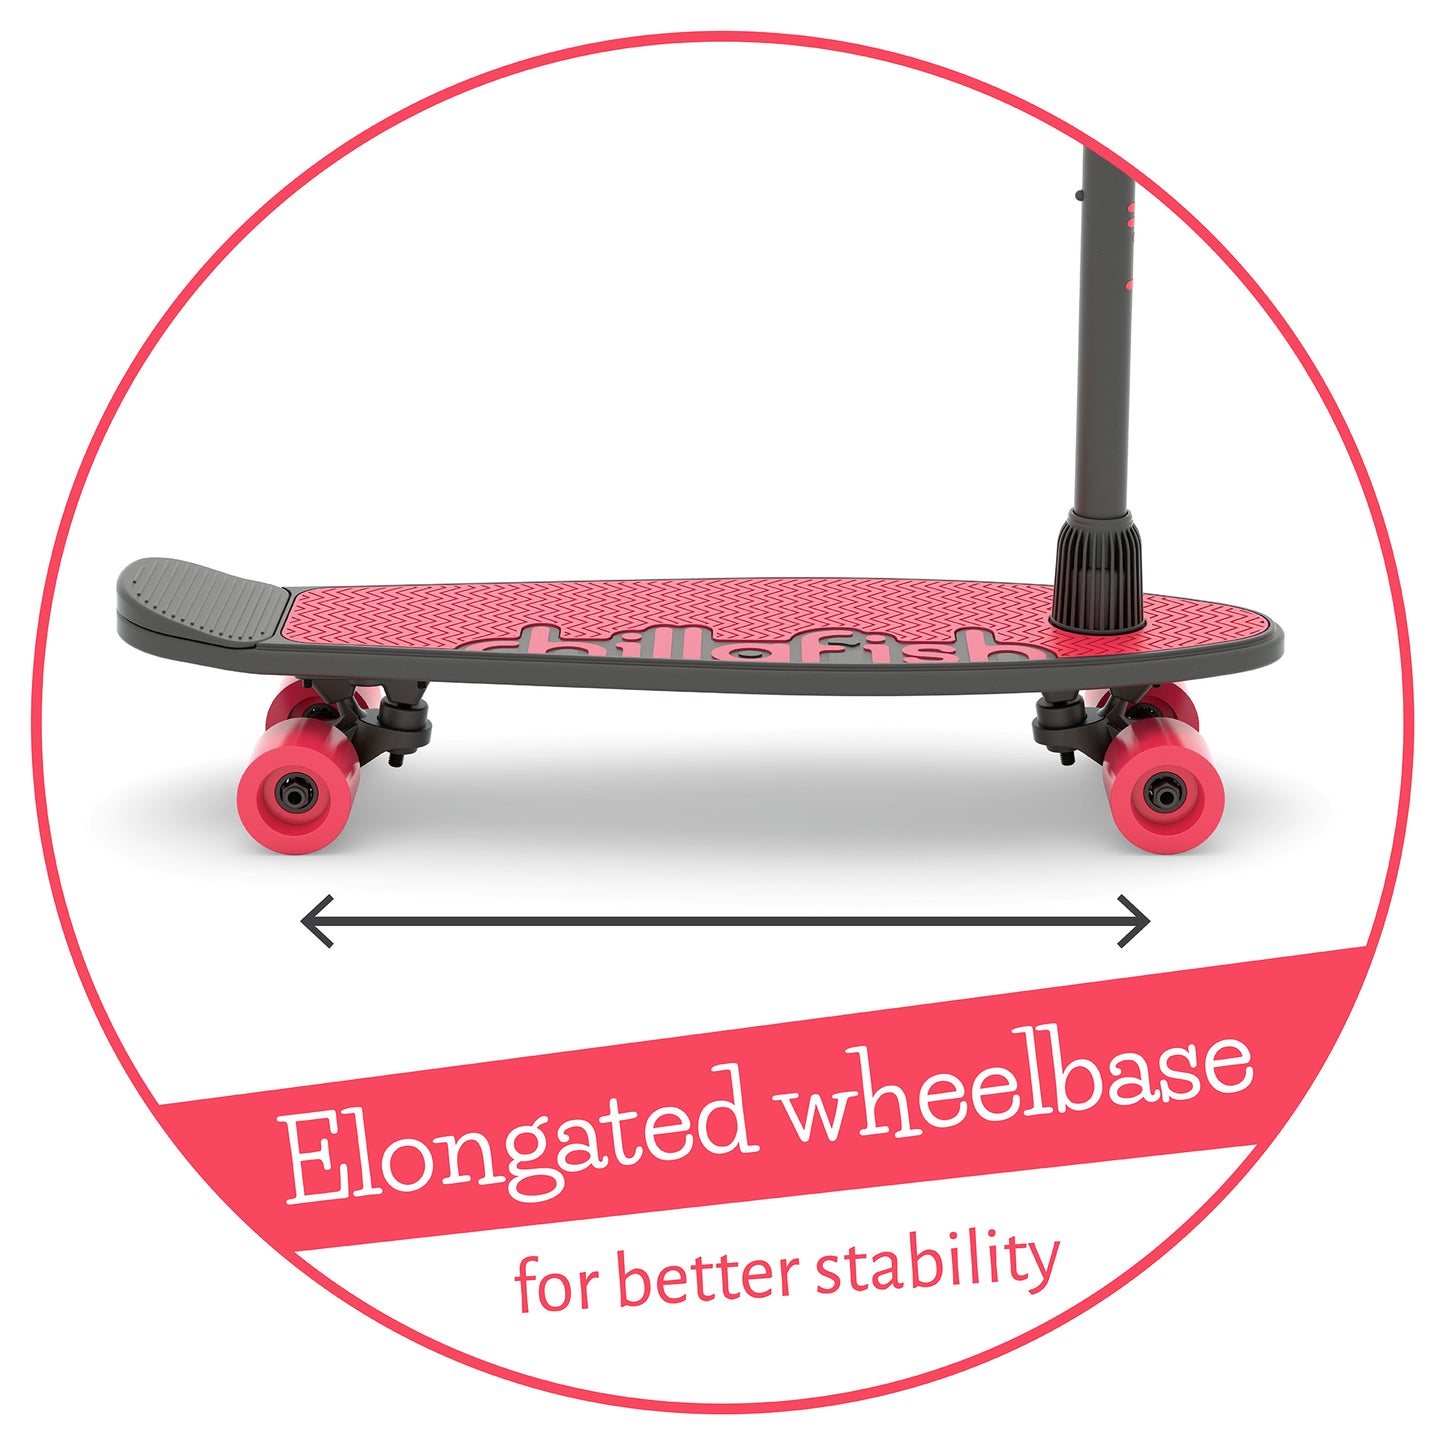 SkatieSkootie : Skateboard personnalisable et trottinette 4 roues 2-en-1 et évolutifs